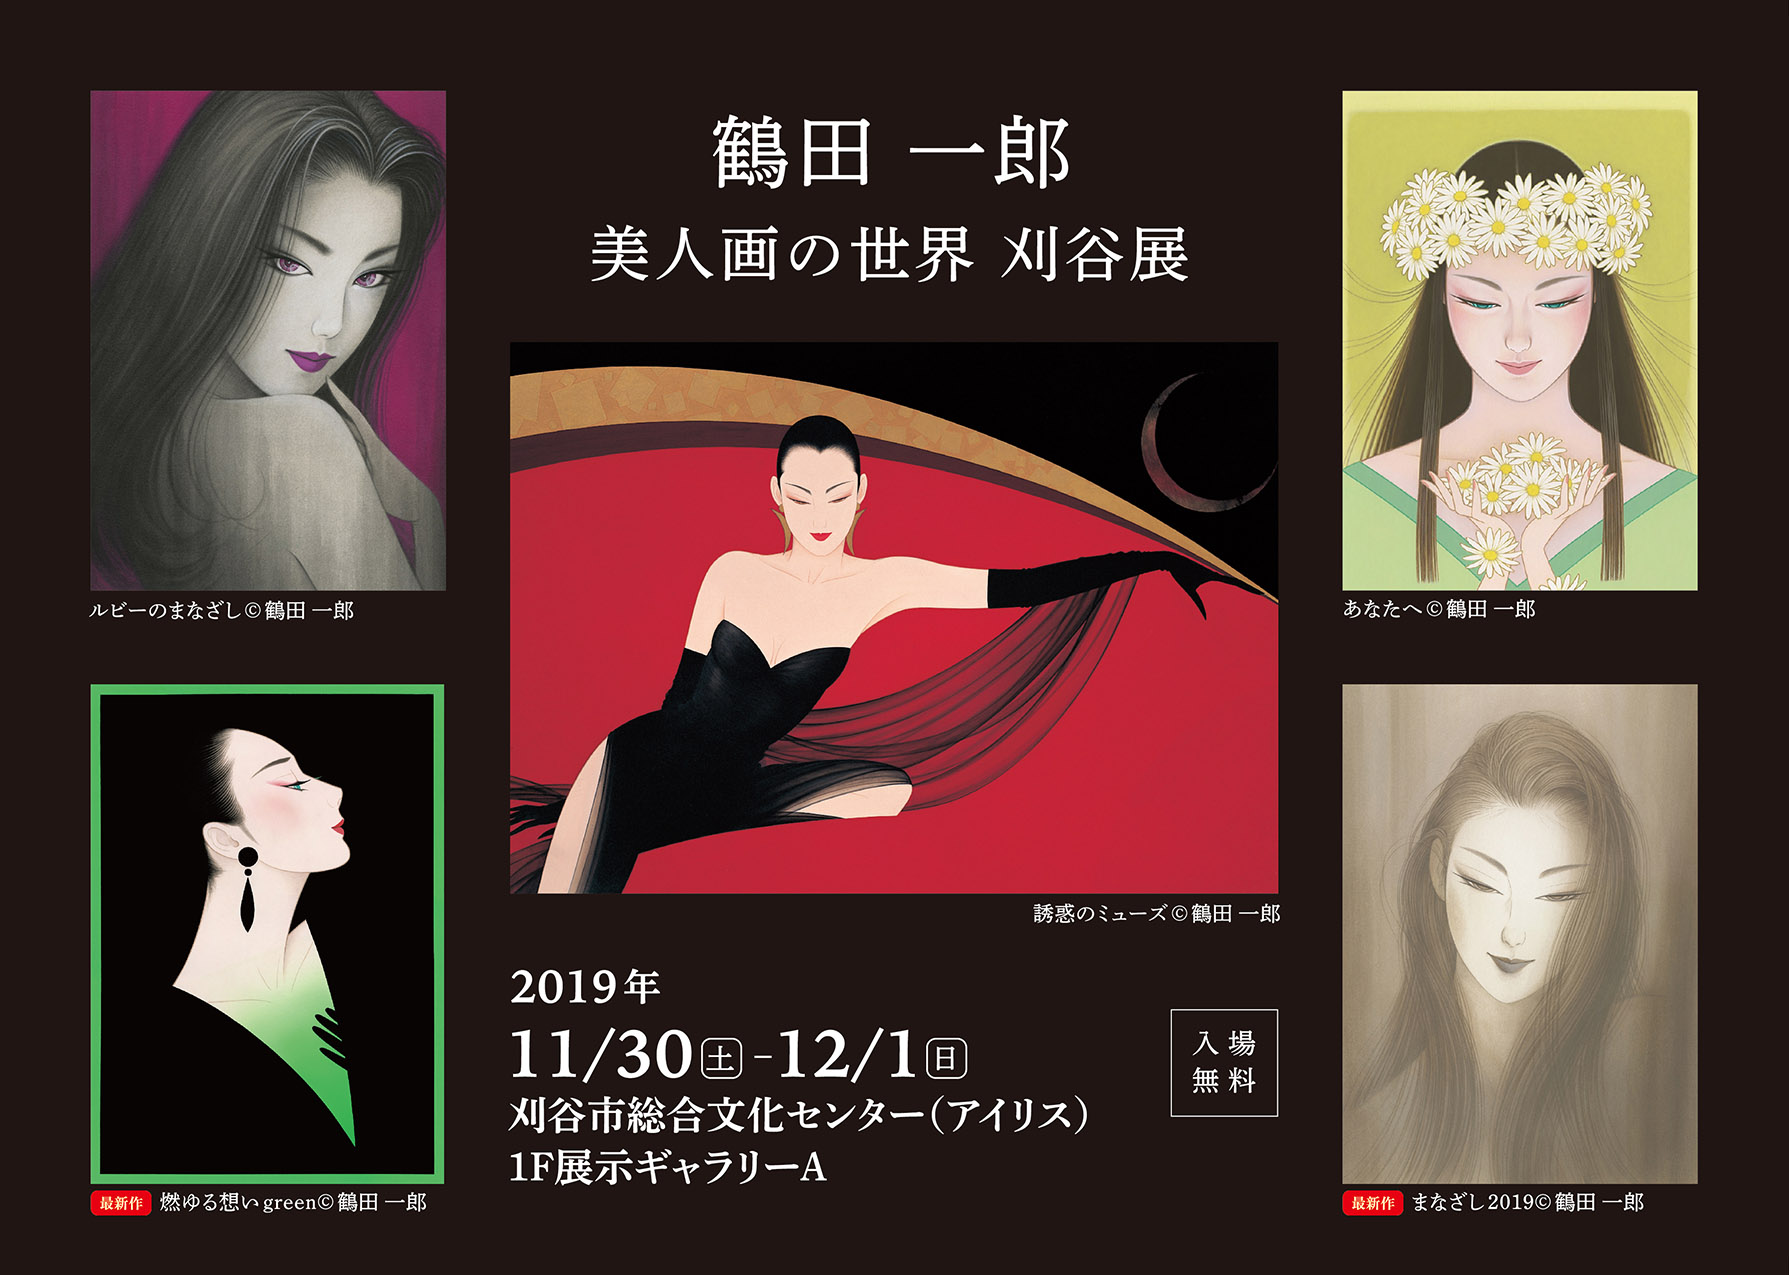 鶴田一郎美人画の世界 刈谷展 – アートボンド